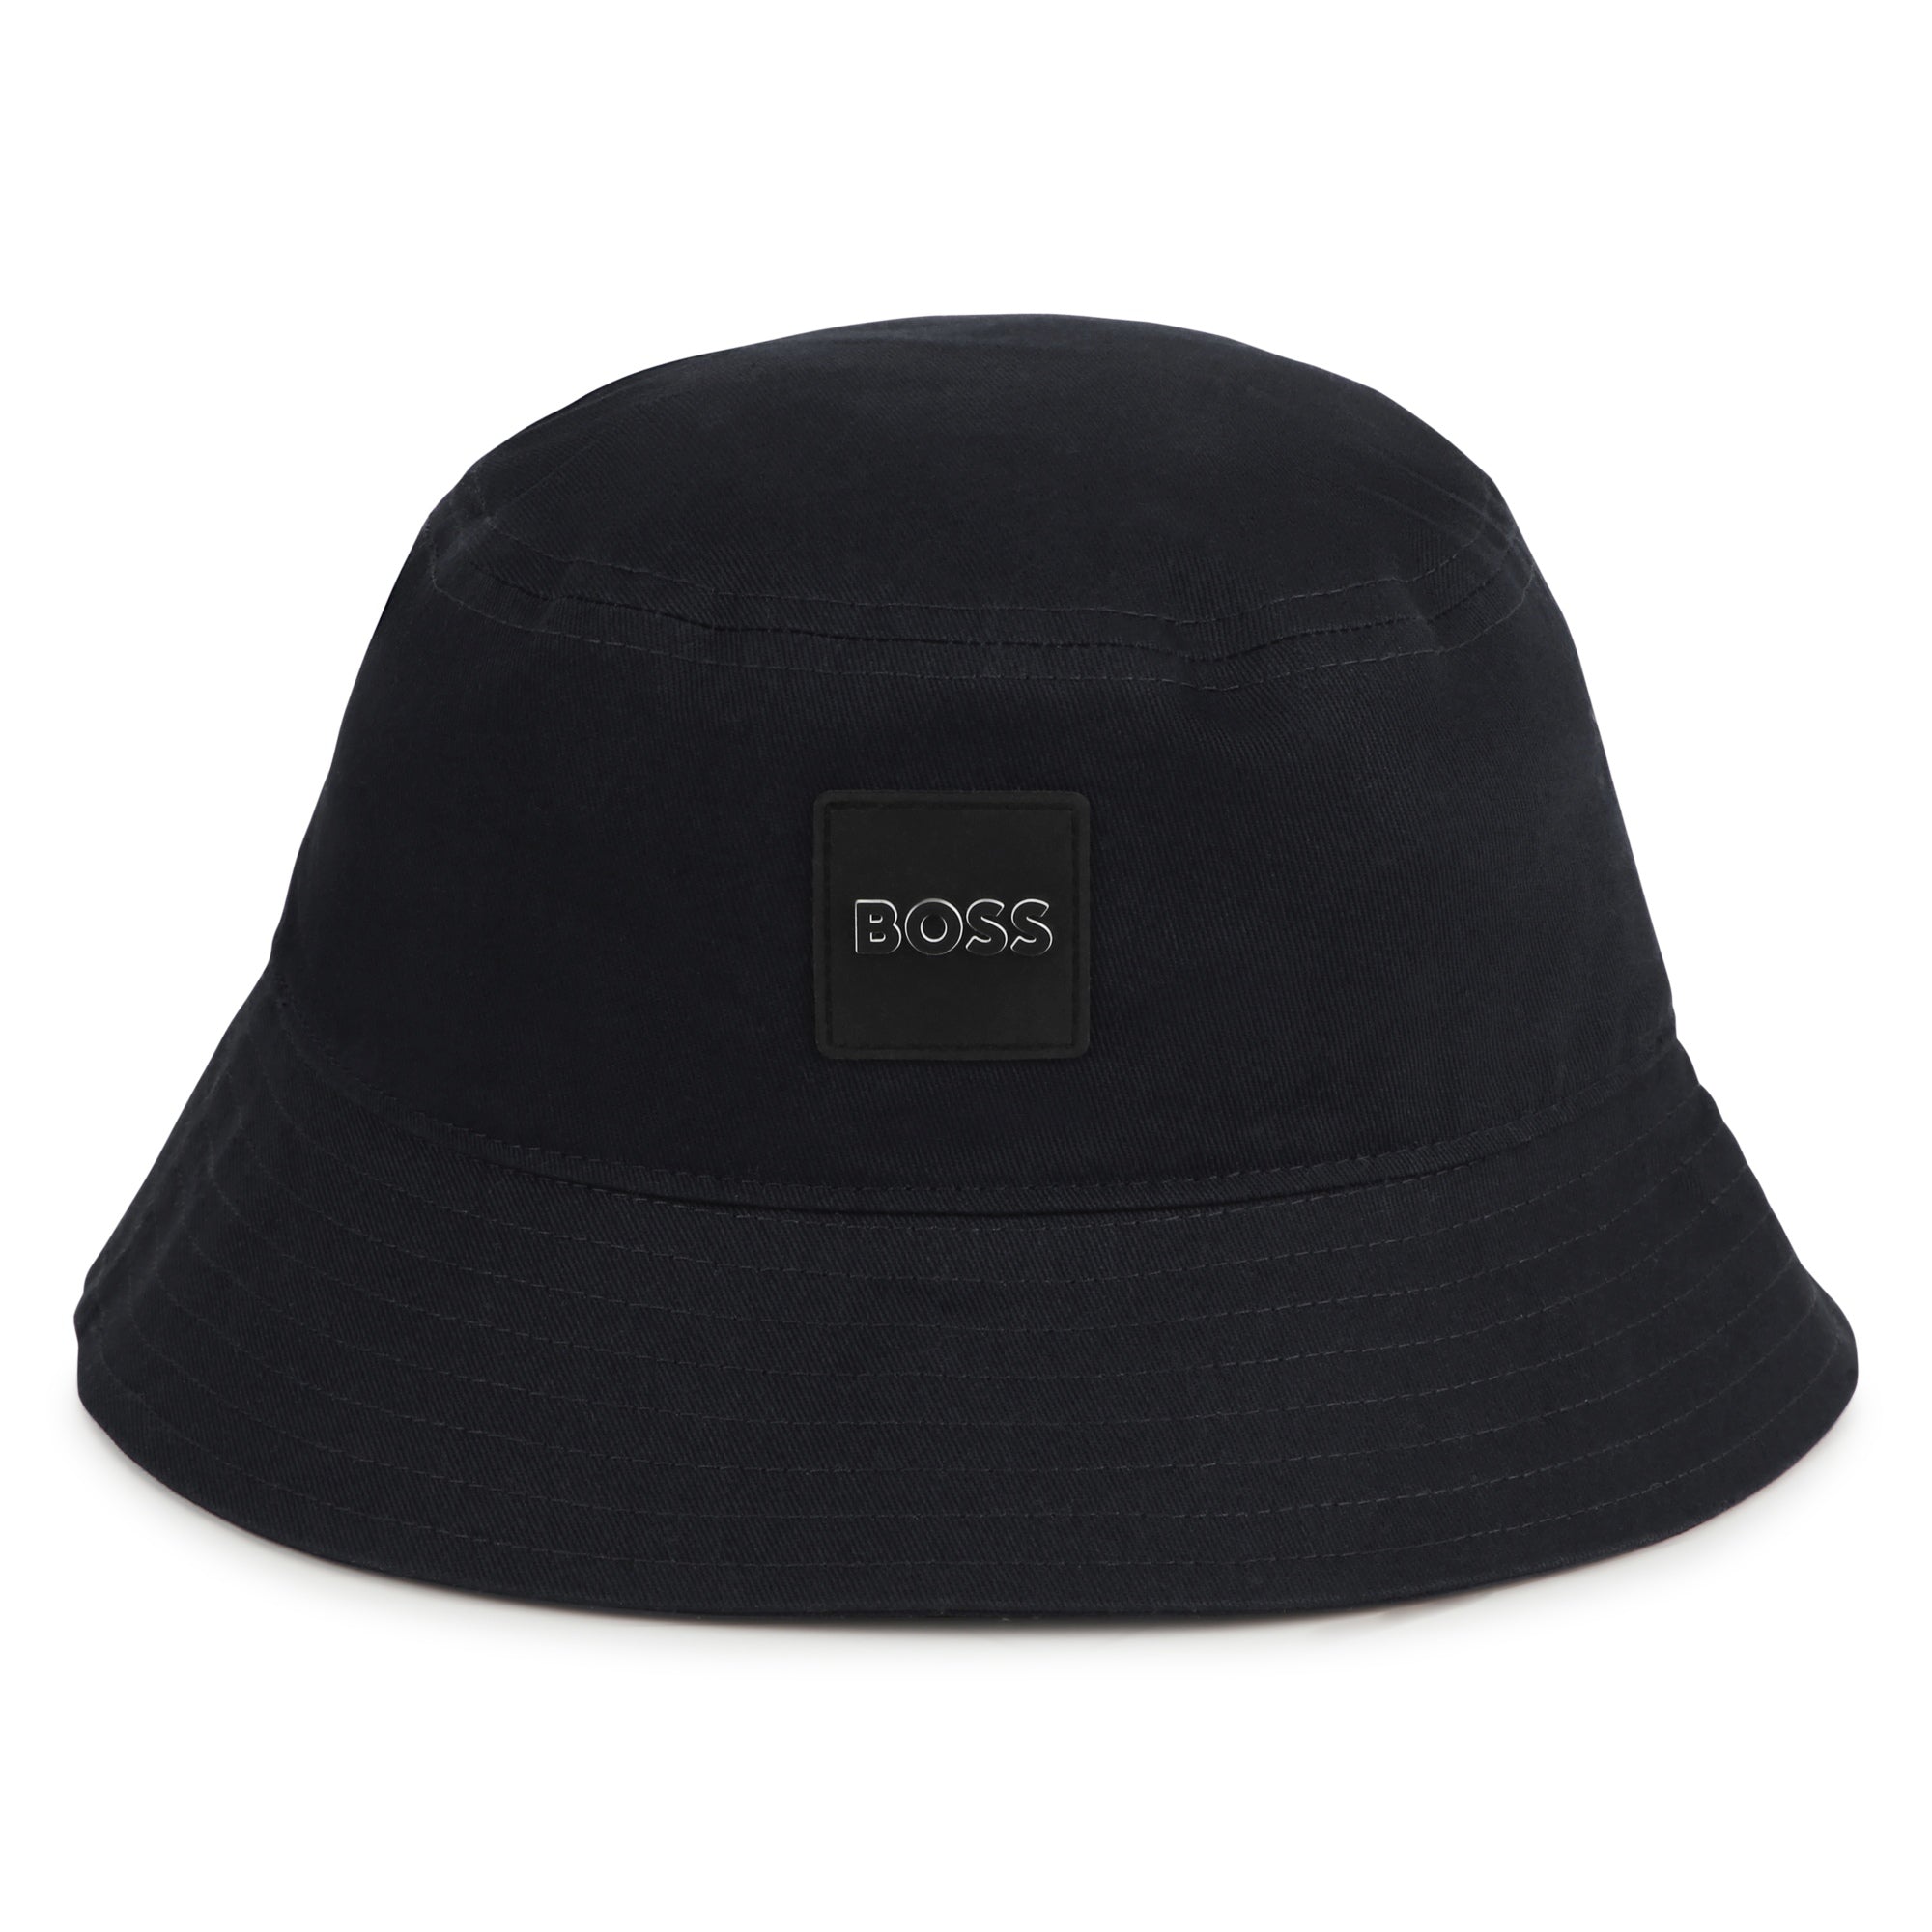 Hugo Boss Black Bucket Hat